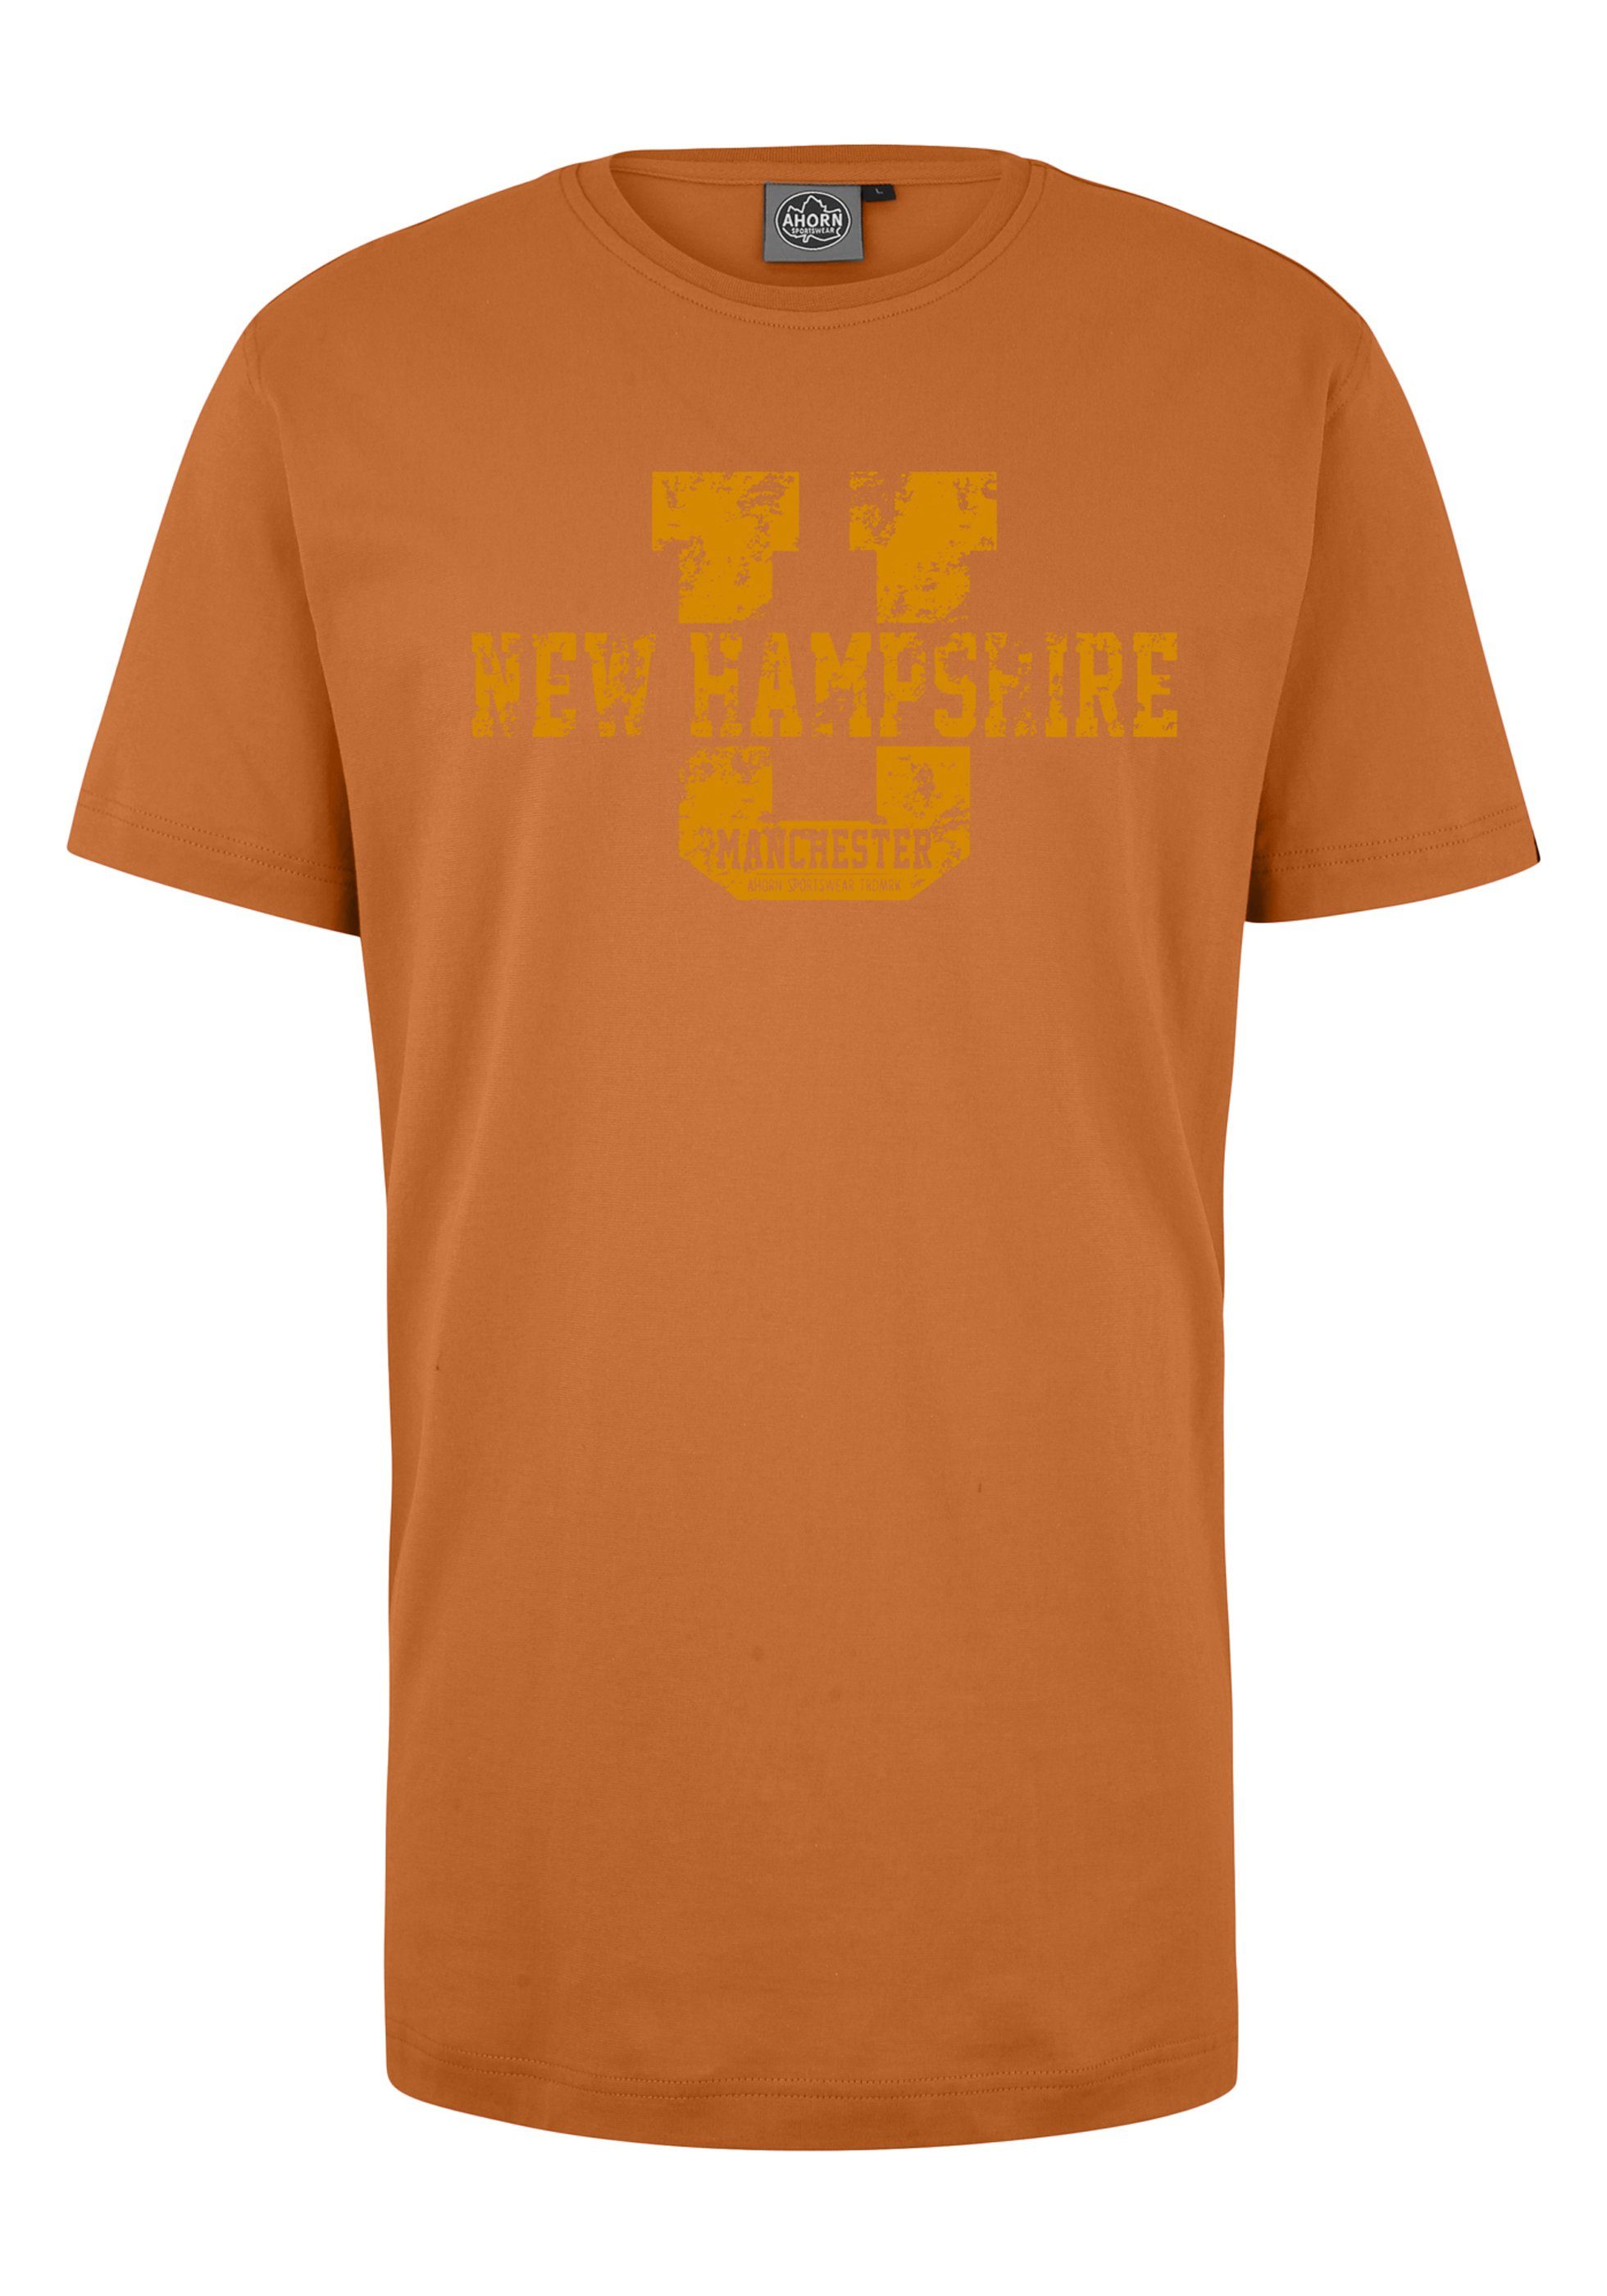 AHORN SPORTSWEAR T-Shirt NEW HAMPSHIRE mit sportlichem Front-Motiv orange